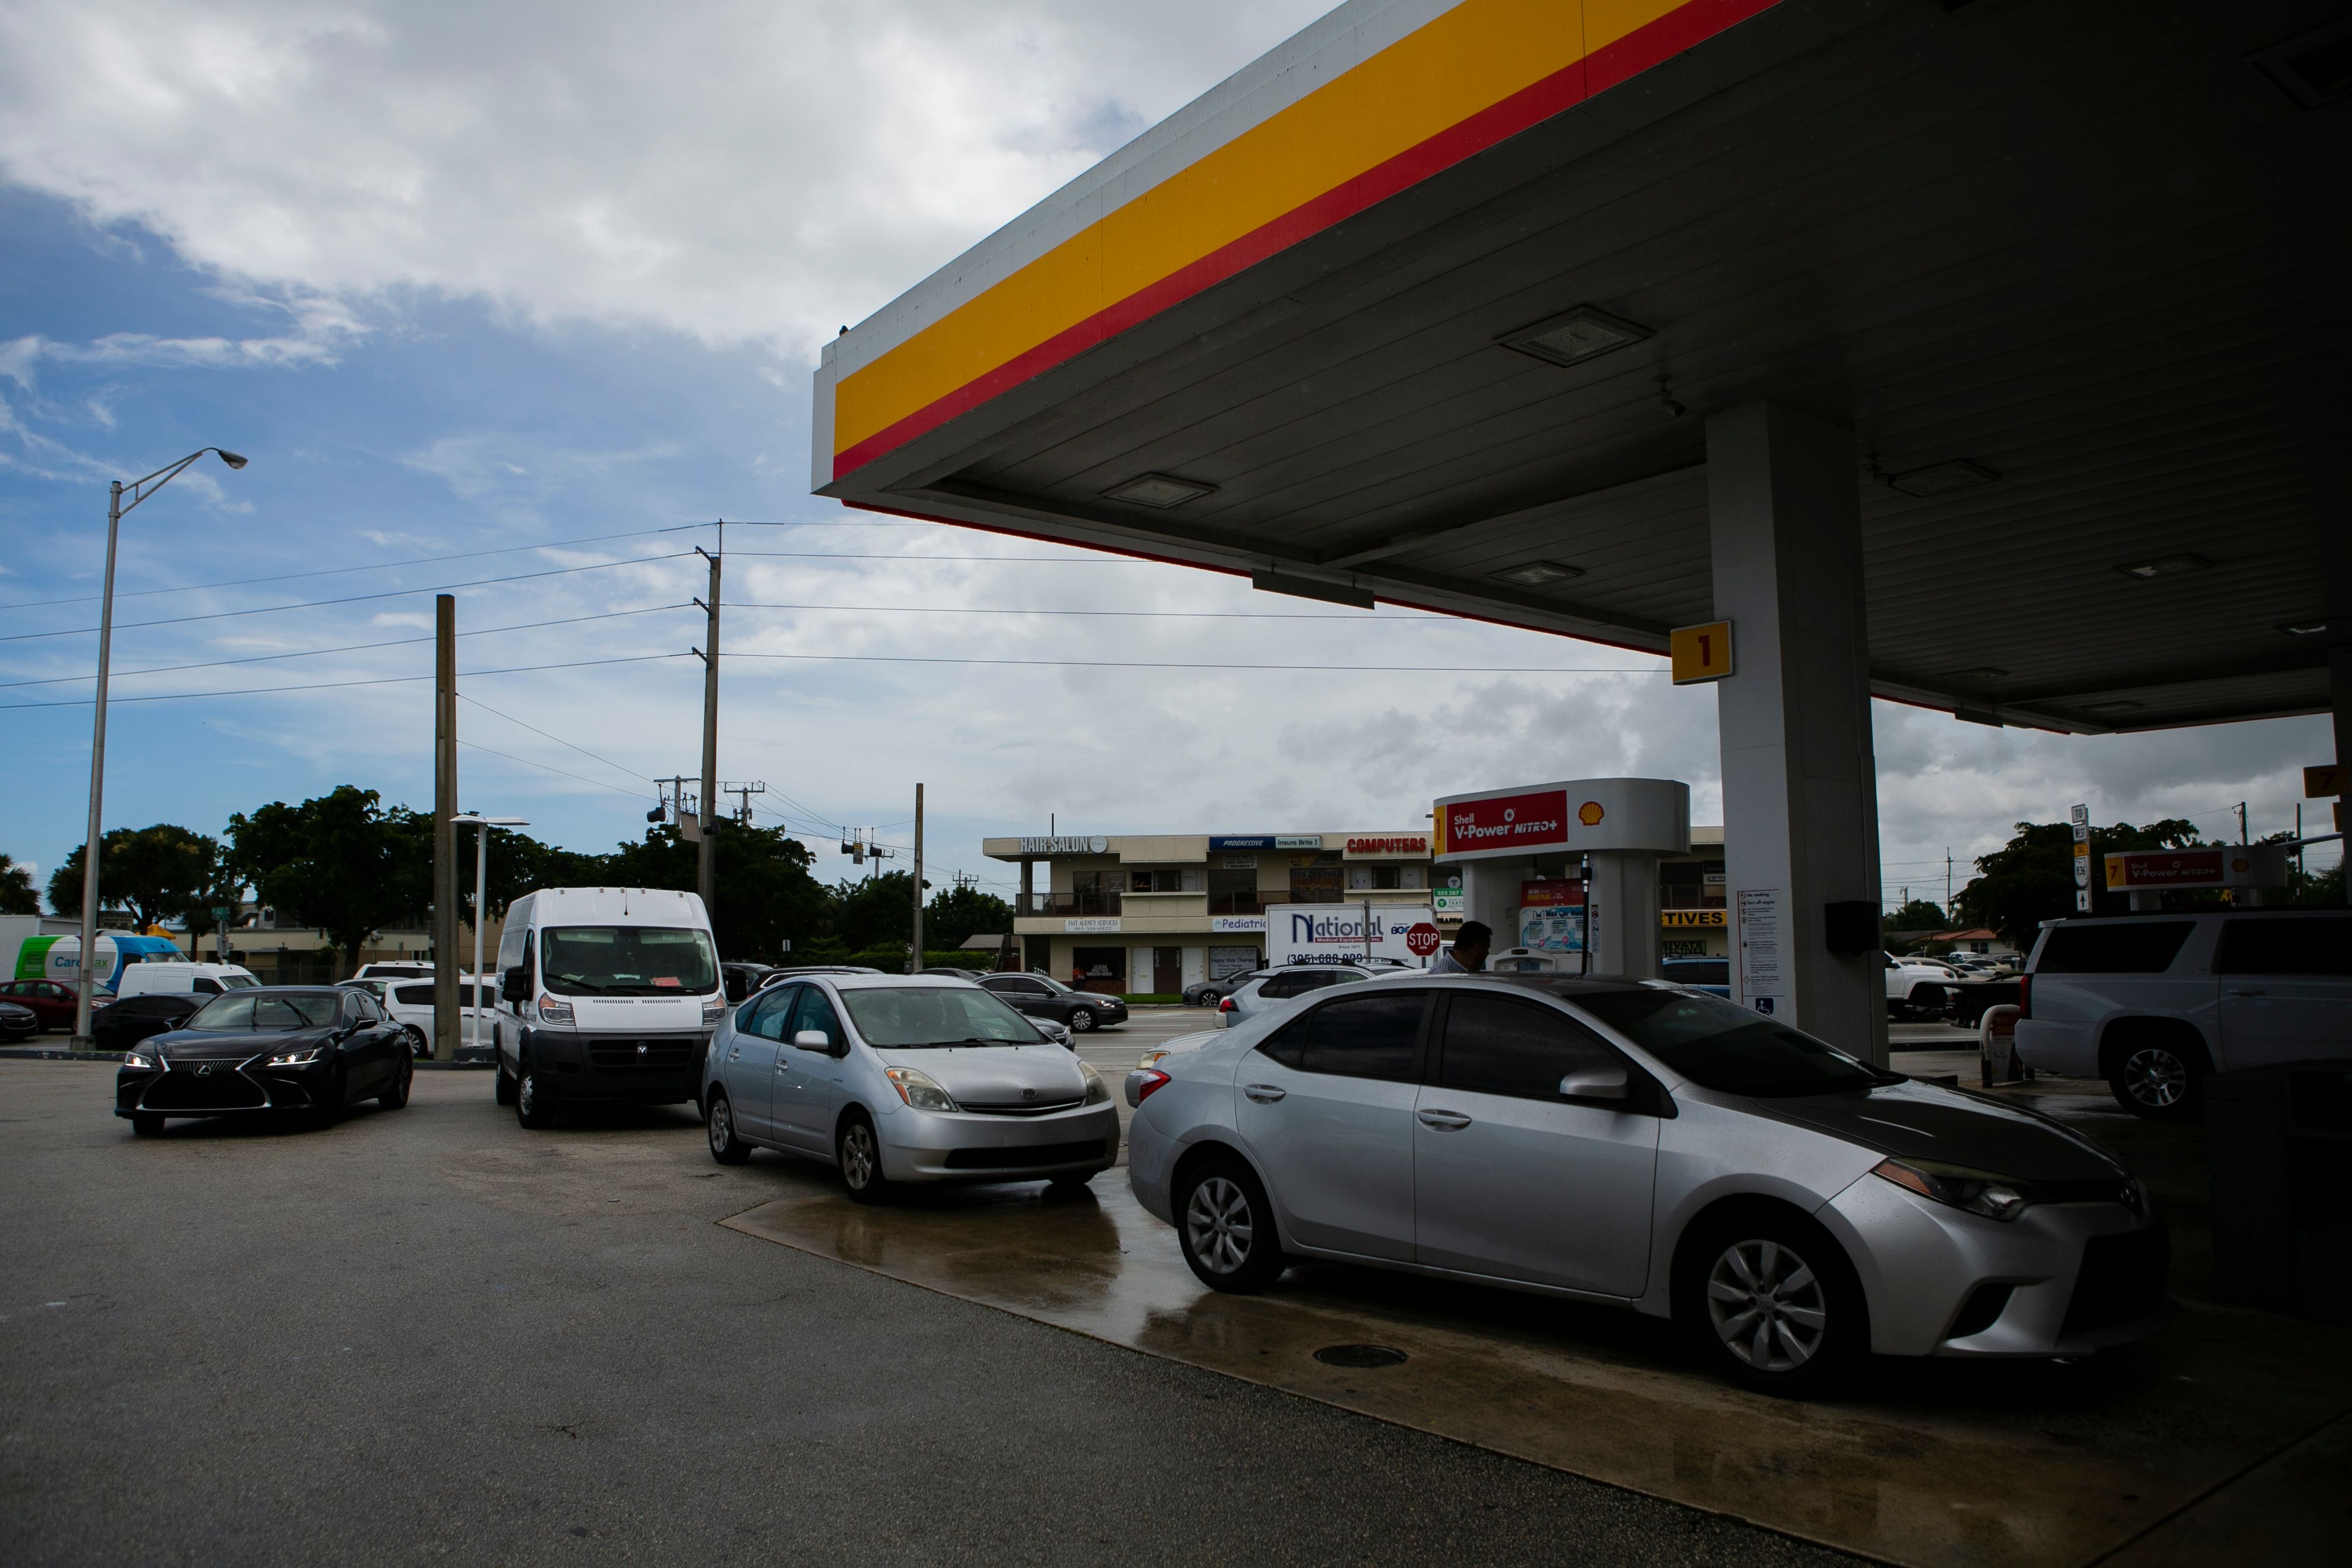 Residentes de Miami esperan llenar combustible, en las horas previas al azote del huracán Dorian. (Foto Prensa Libre: AFP)